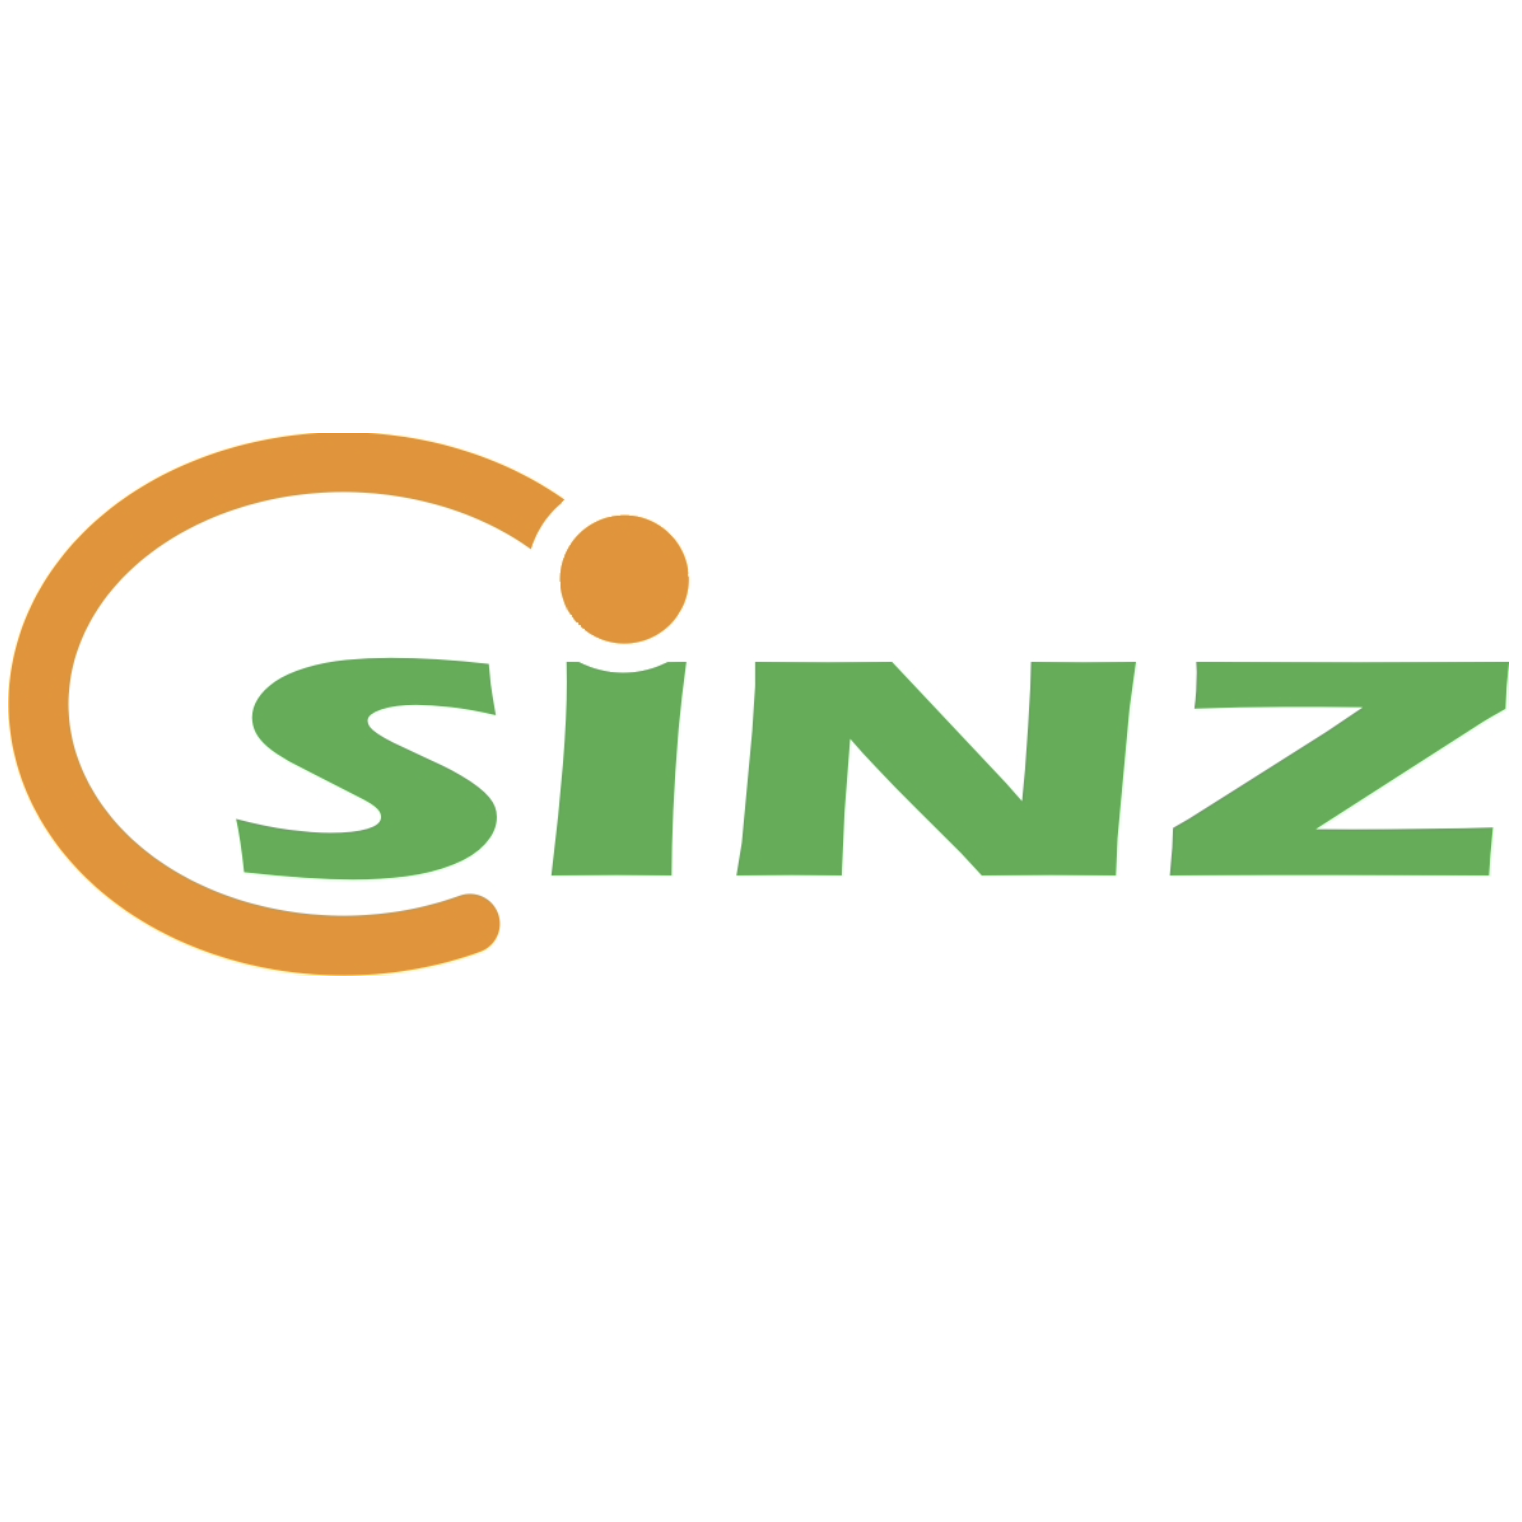 Sinz Entsorgung GmbH Logo